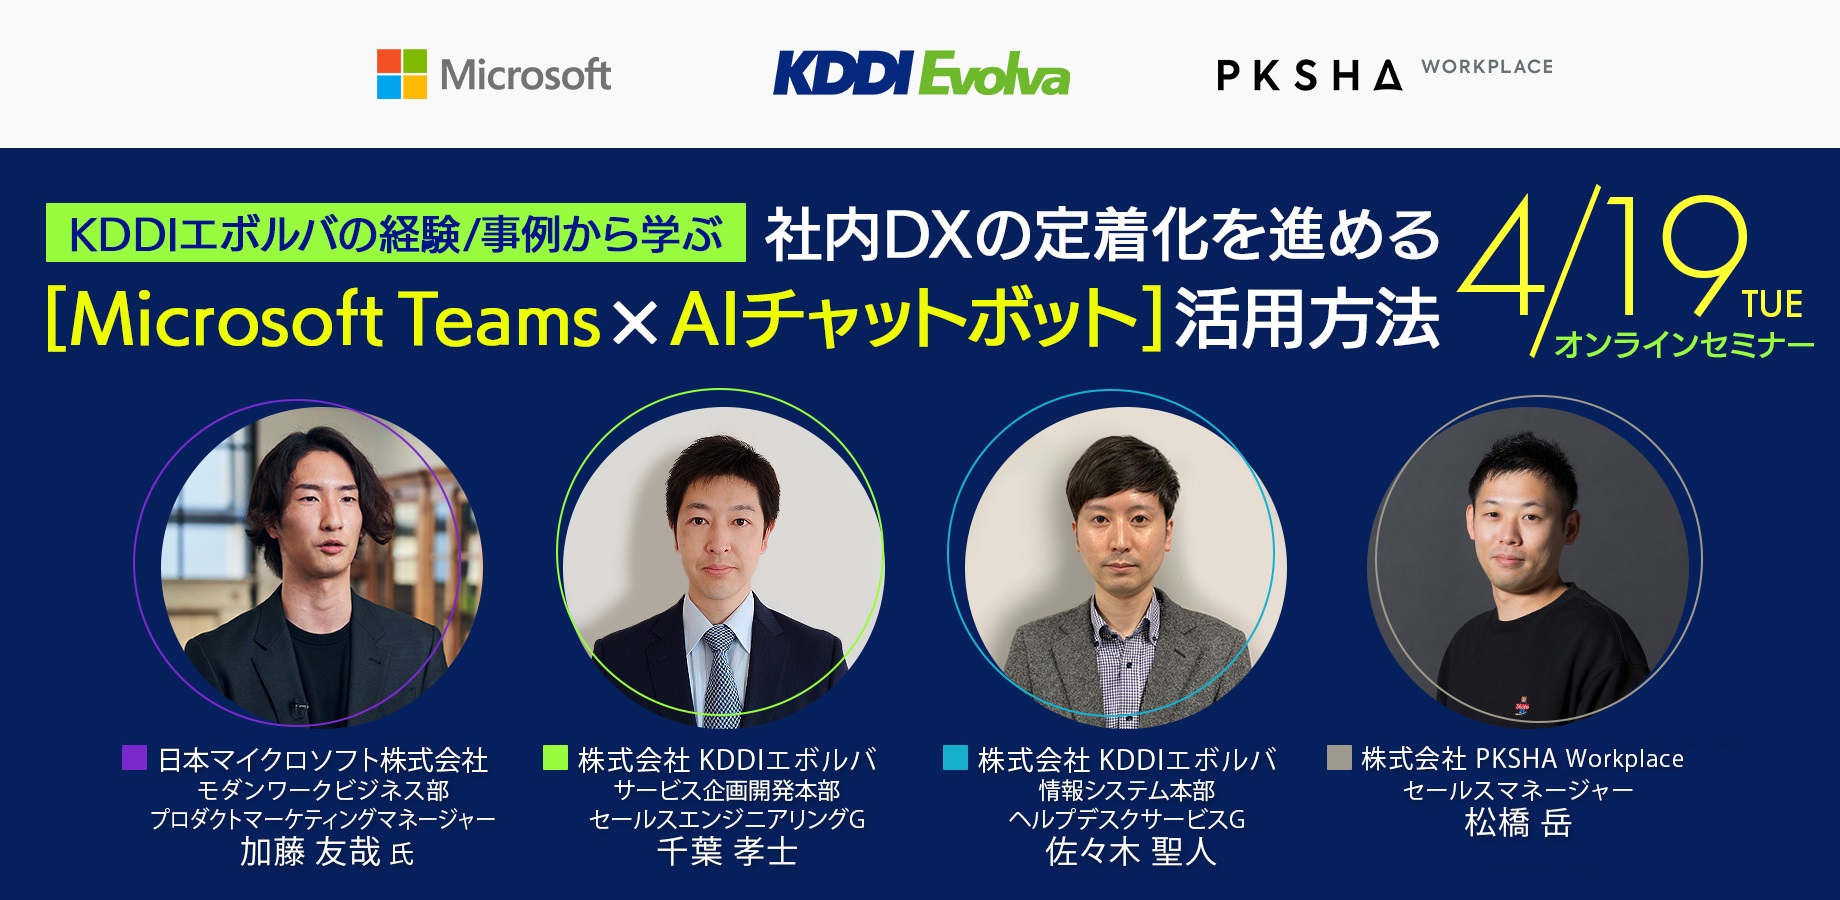 【4/19 開催セミナー】KDDIエボルバの経験/事例から学ぶ社内DX定着化を促進する「Microsoft Teams × AIチャットボット」活用方法